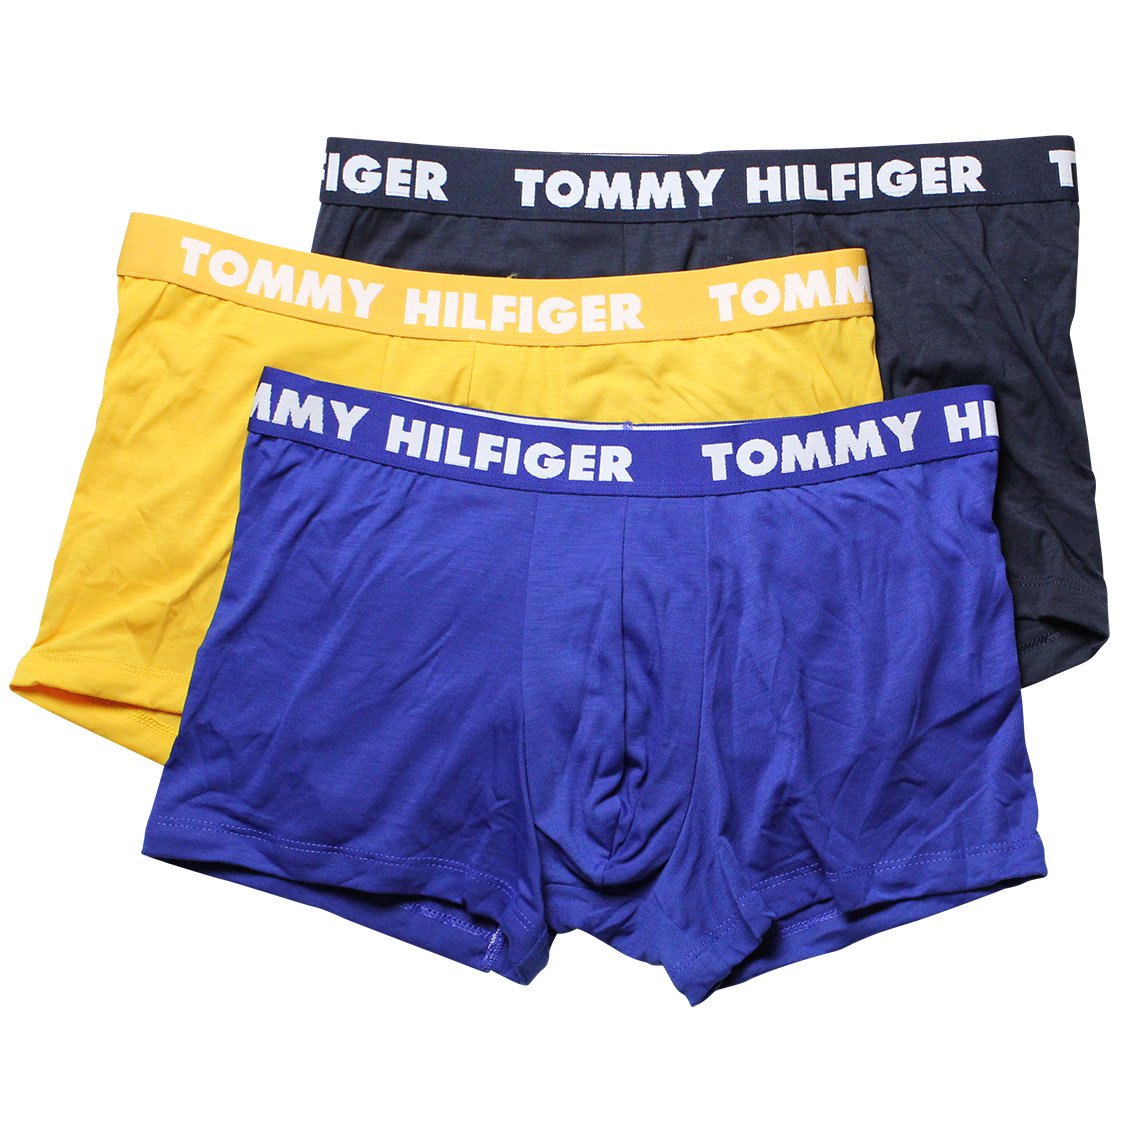 TOMMY HILFIGER(トミーヒルフィガー)[09T3798-431]:ボクサーパンツ